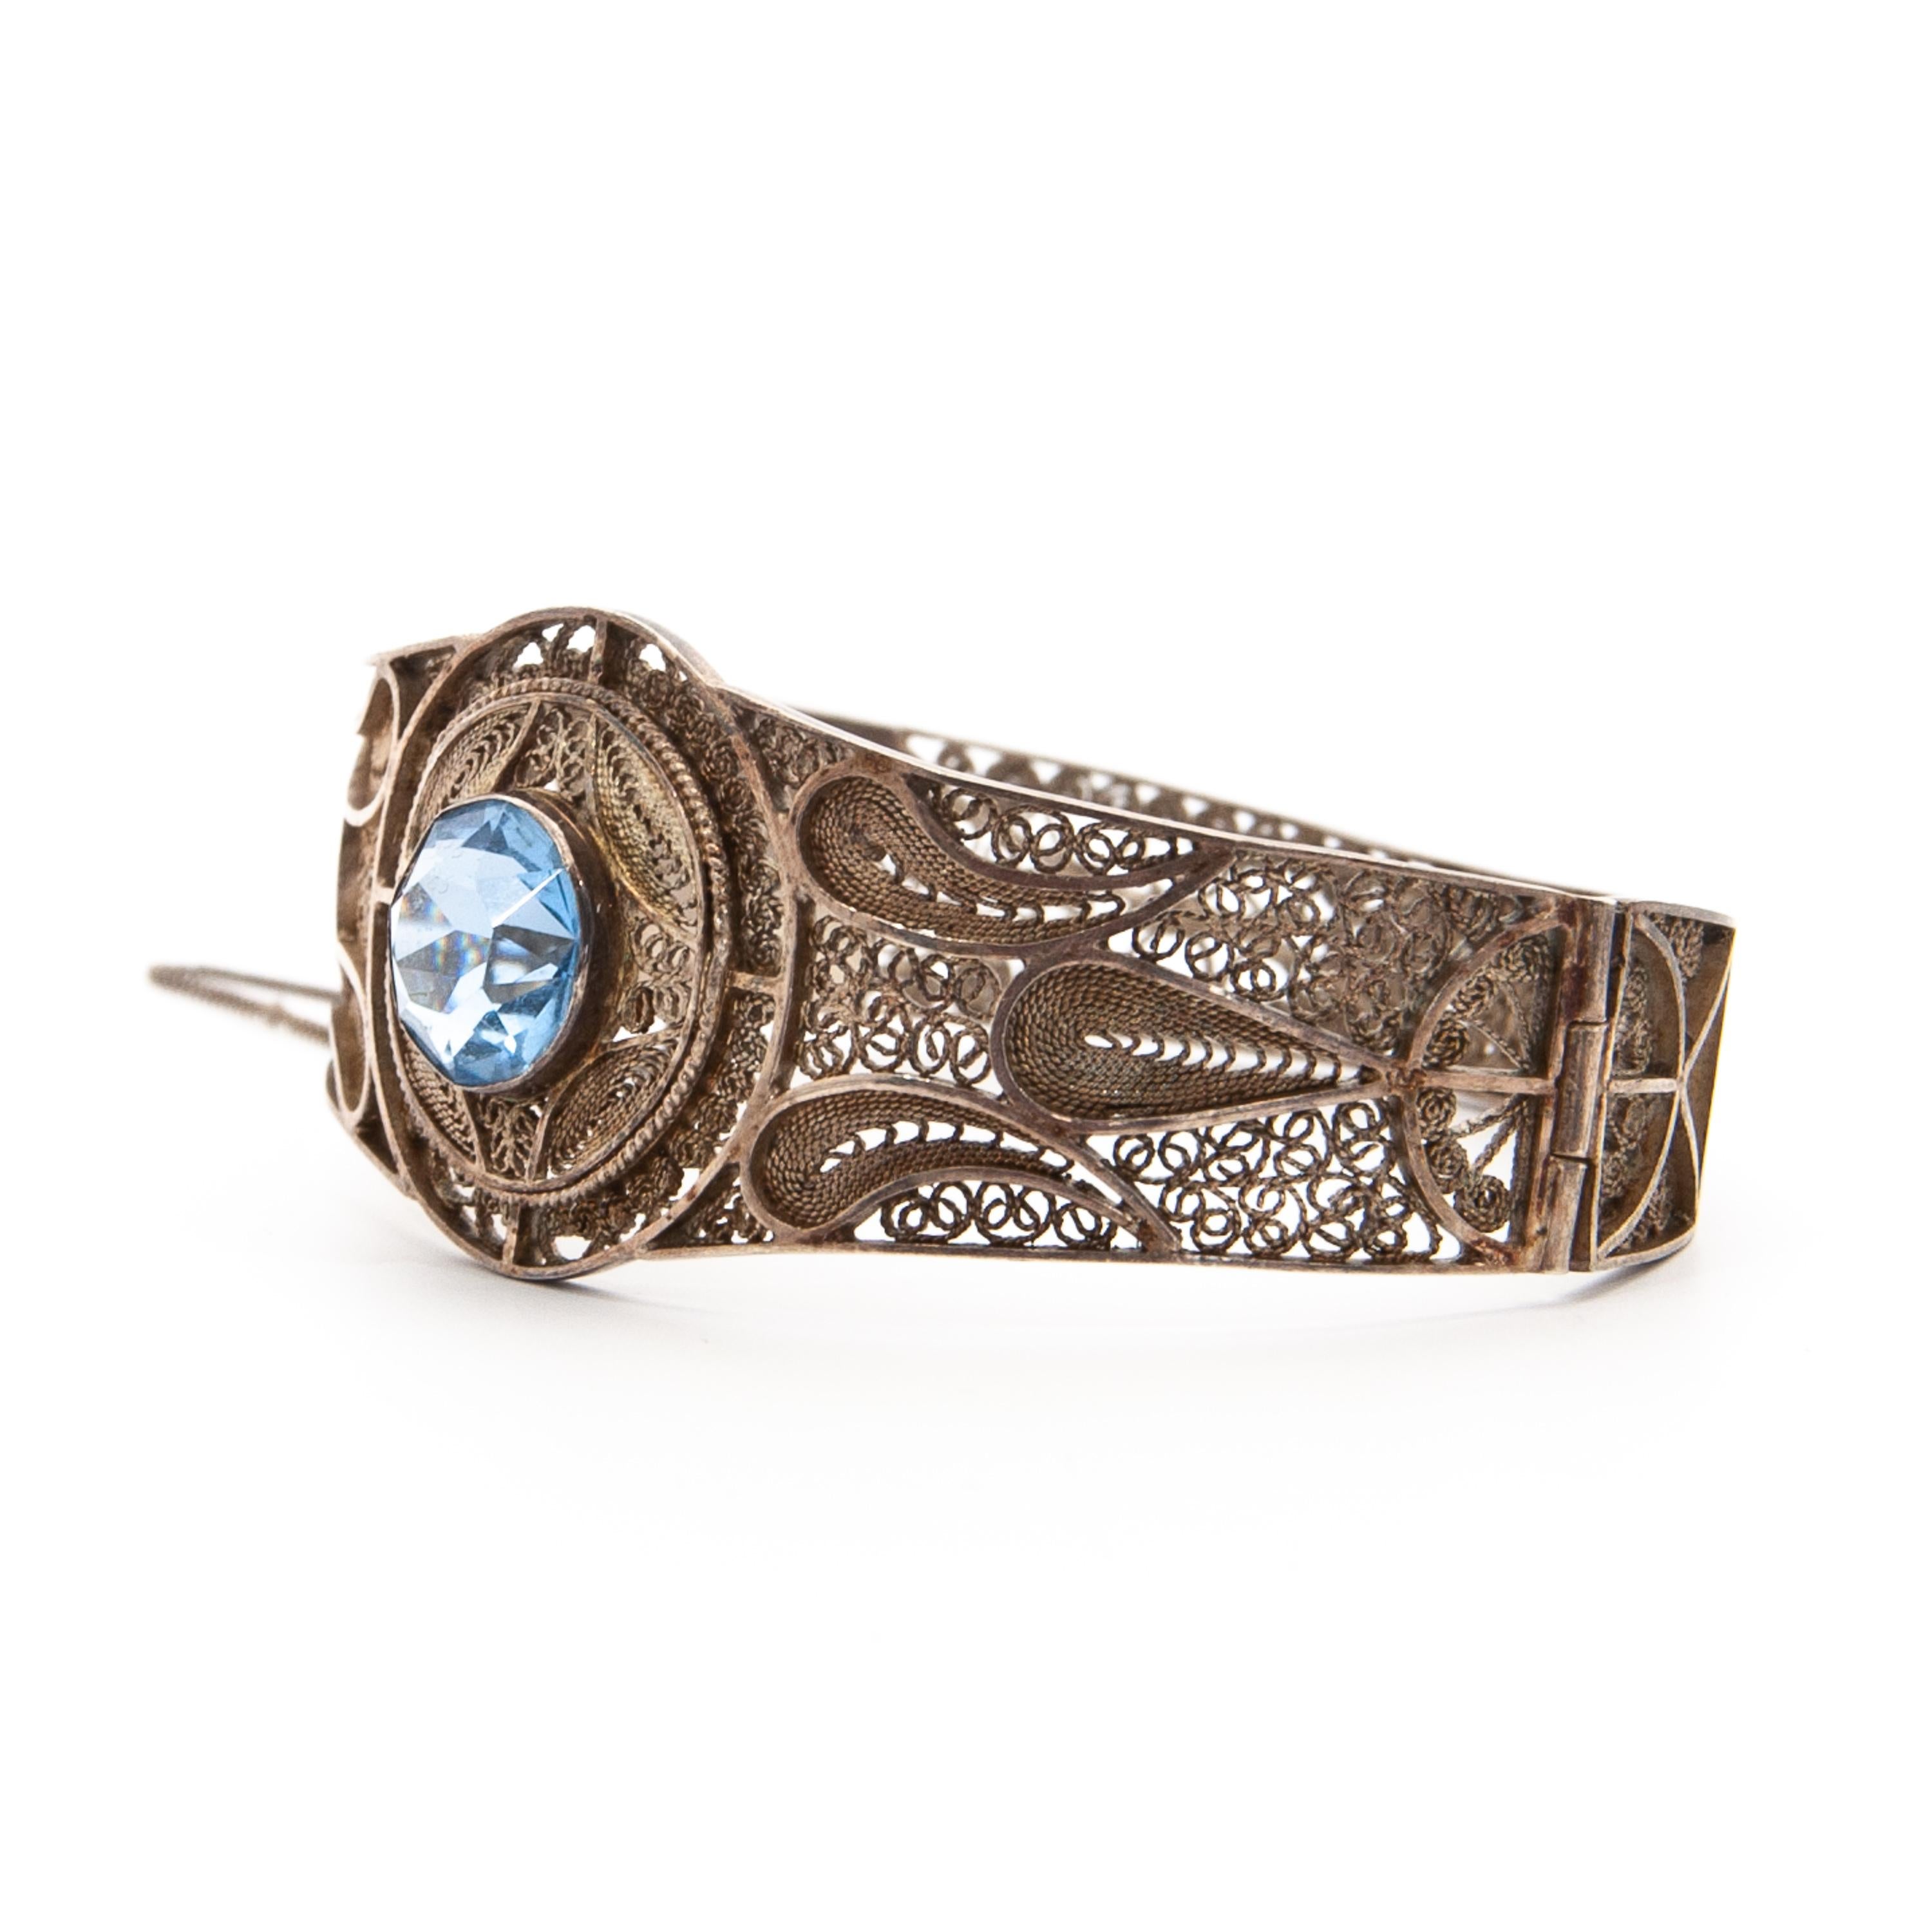 Ein silberner Armreif im Jugendstil, besetzt mit einem blauen Stein. Dieses wunderschöne, handgefertigte Armband besteht aus echtem 835er Silber, besetzt mit einem großen blauen Stein in der Mitte in der Farbe Aquamarin. Das Filigran ist sehr fein